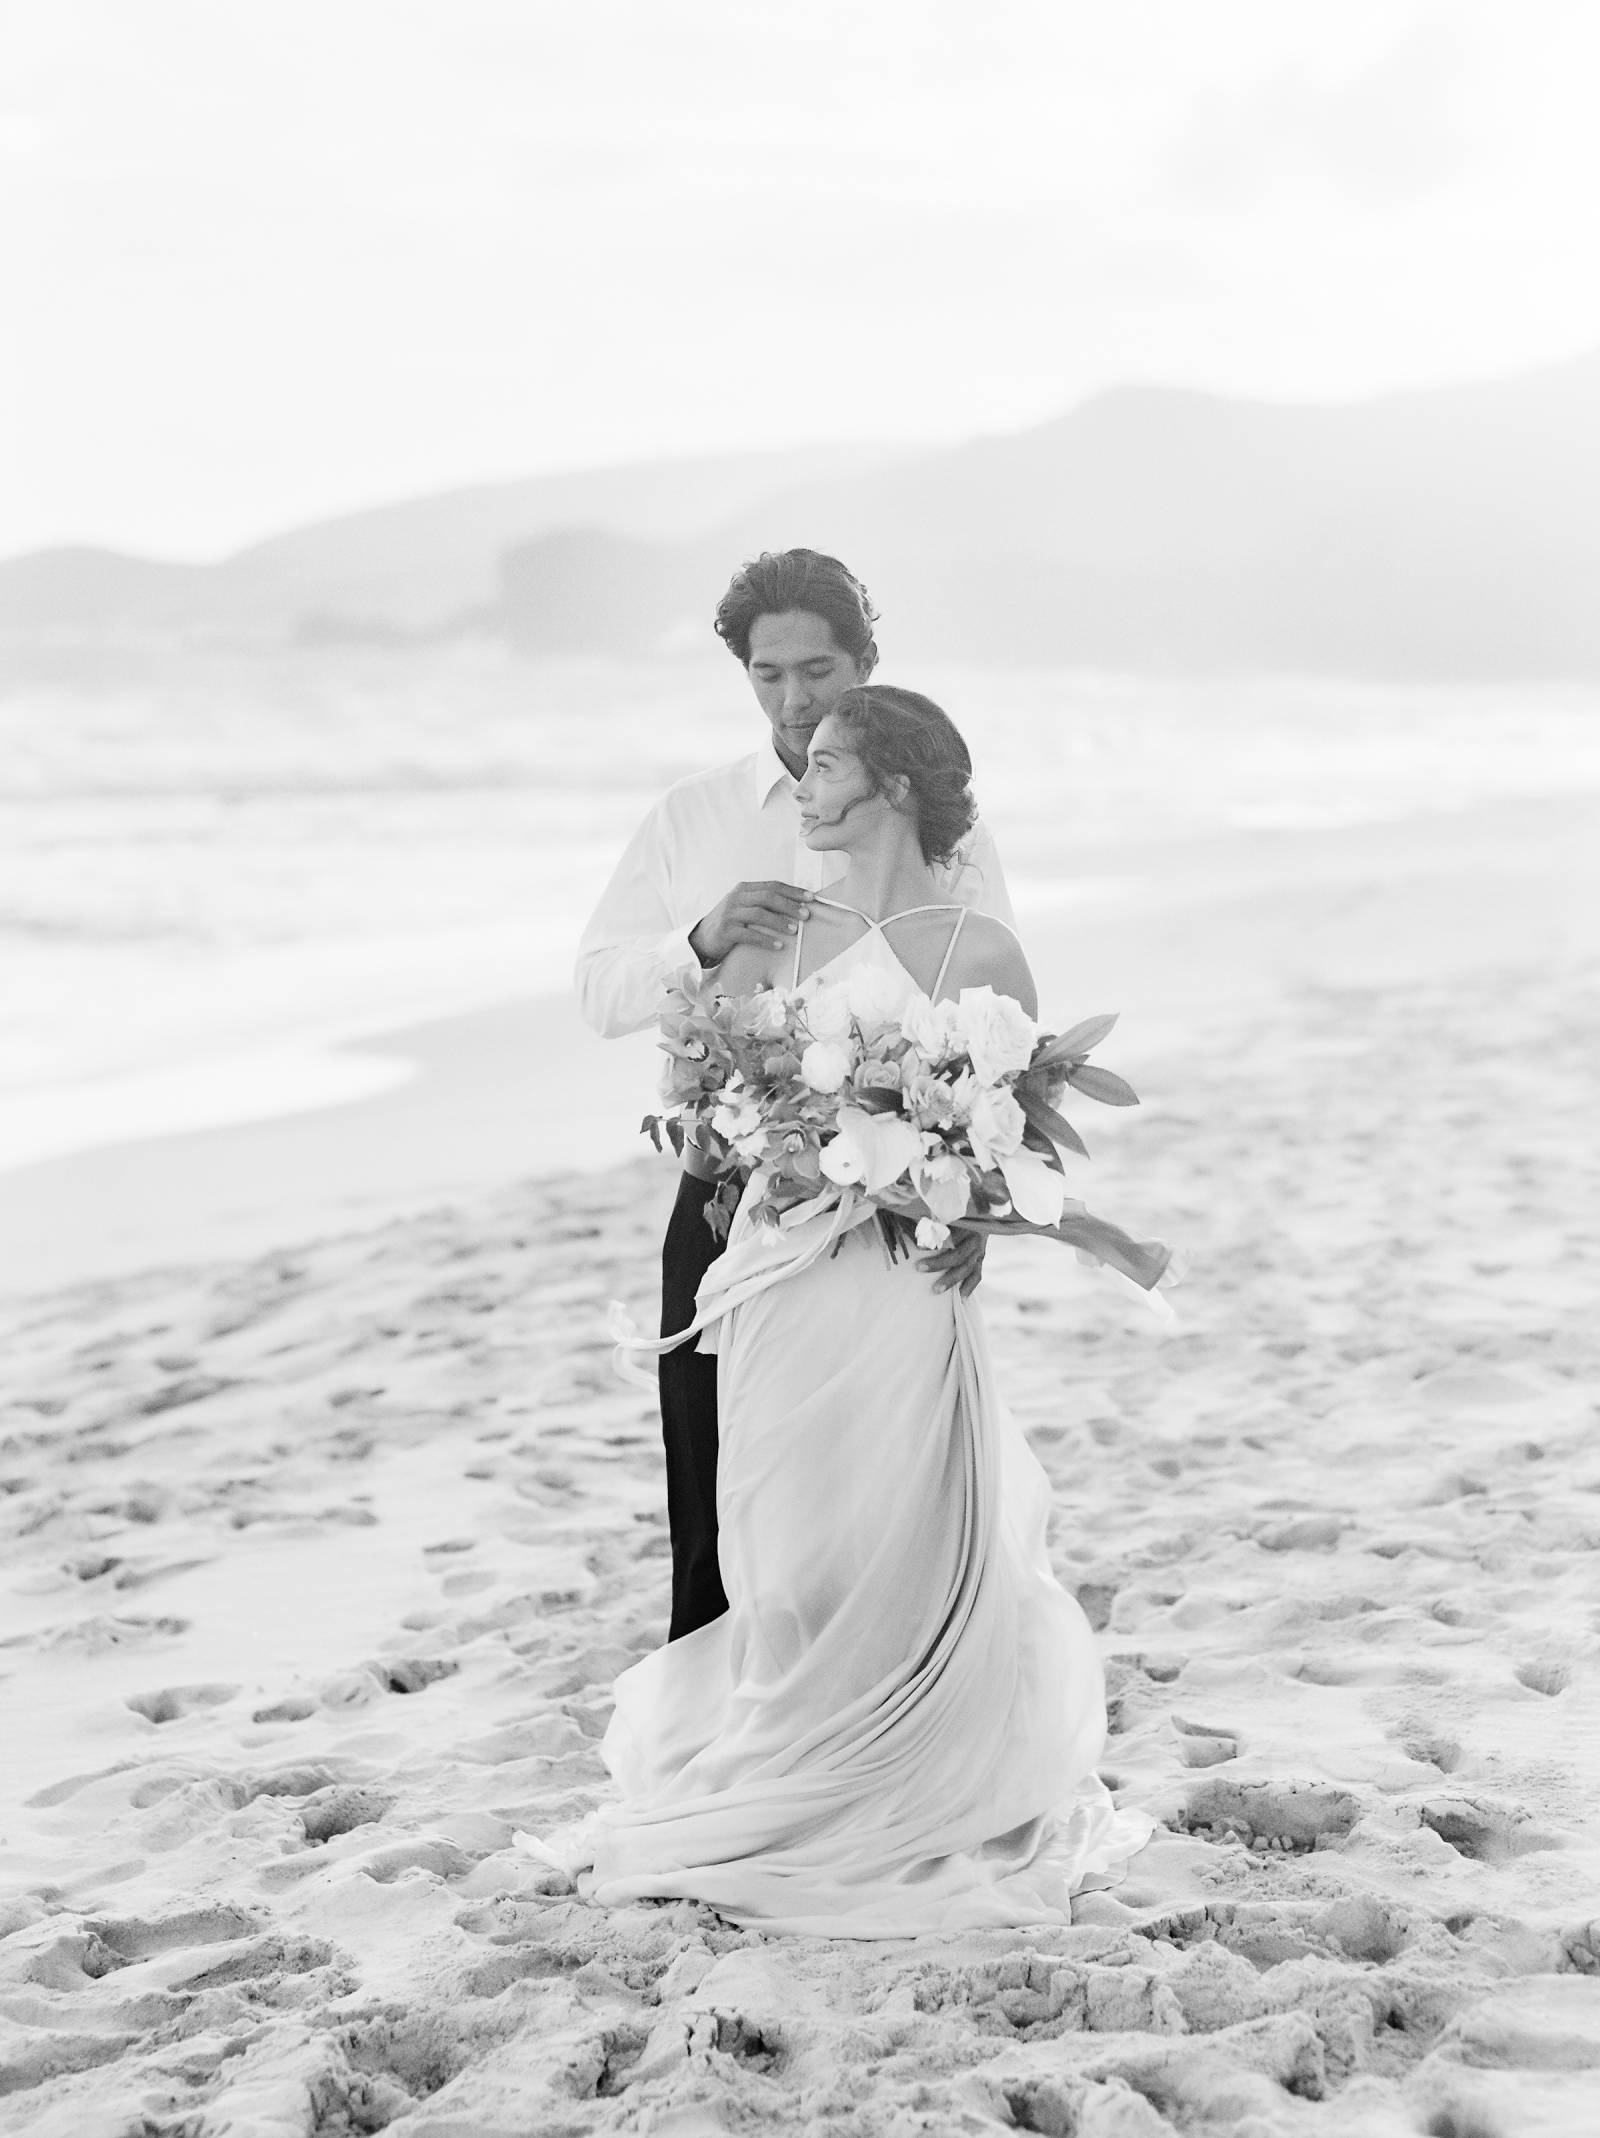 Tropical citrus Micro-wedding inspiration in Hawaii | Hawaii Wedding ...